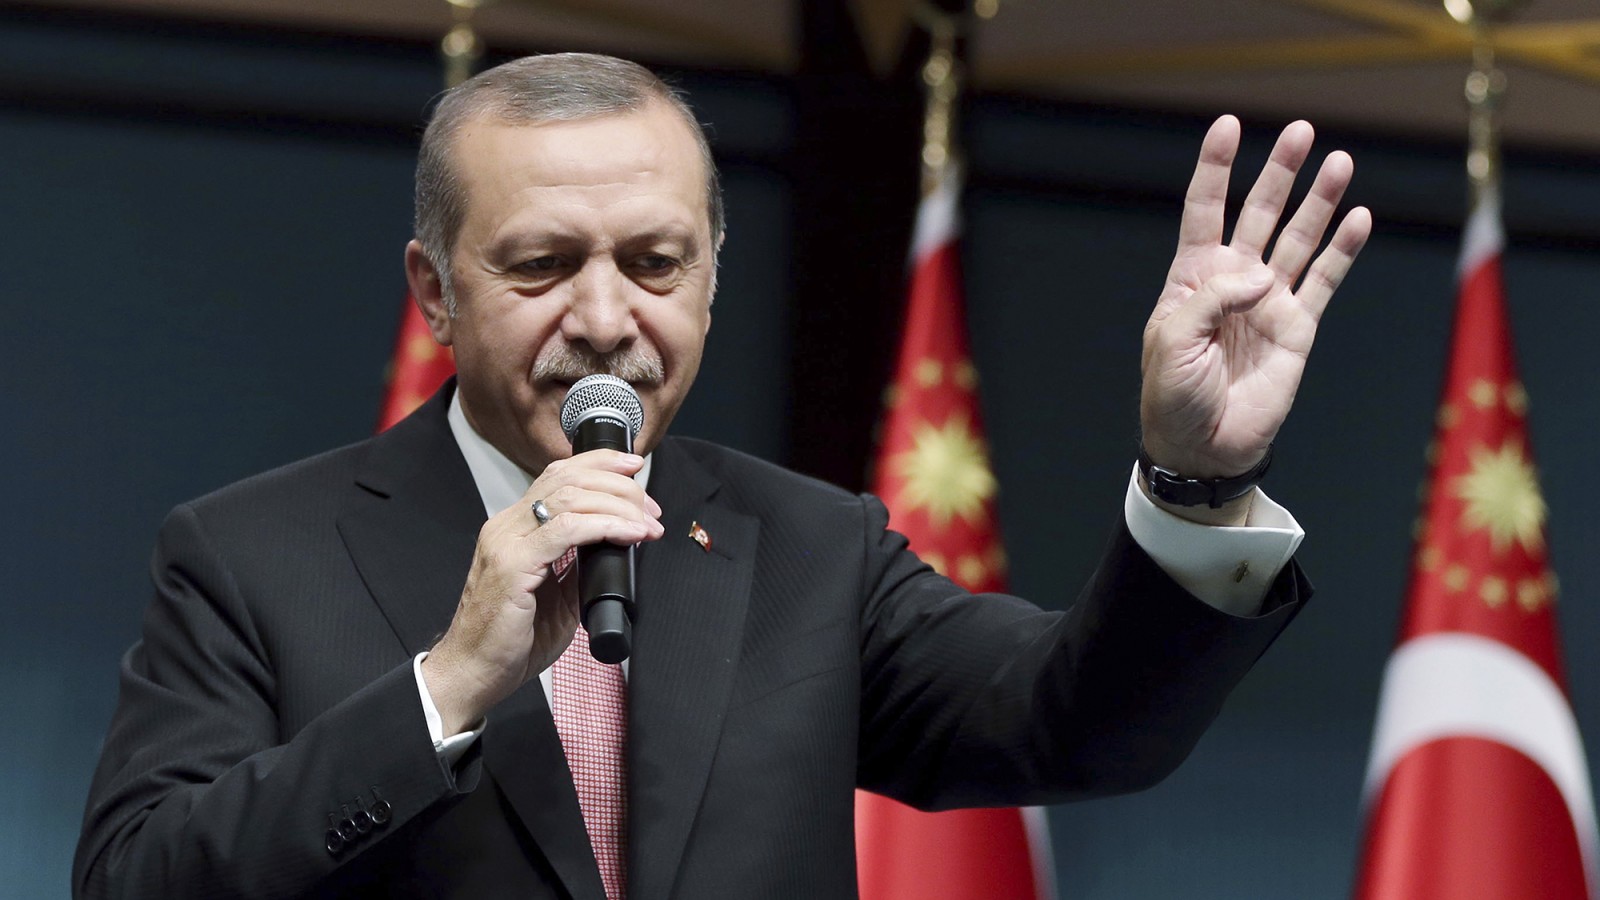 ארדואן הנאום בעקבות ישיבת חירום של הממשלה הטורקית לאחר נסיון ההפיכה הצבאית. צילום: סוכנות AP